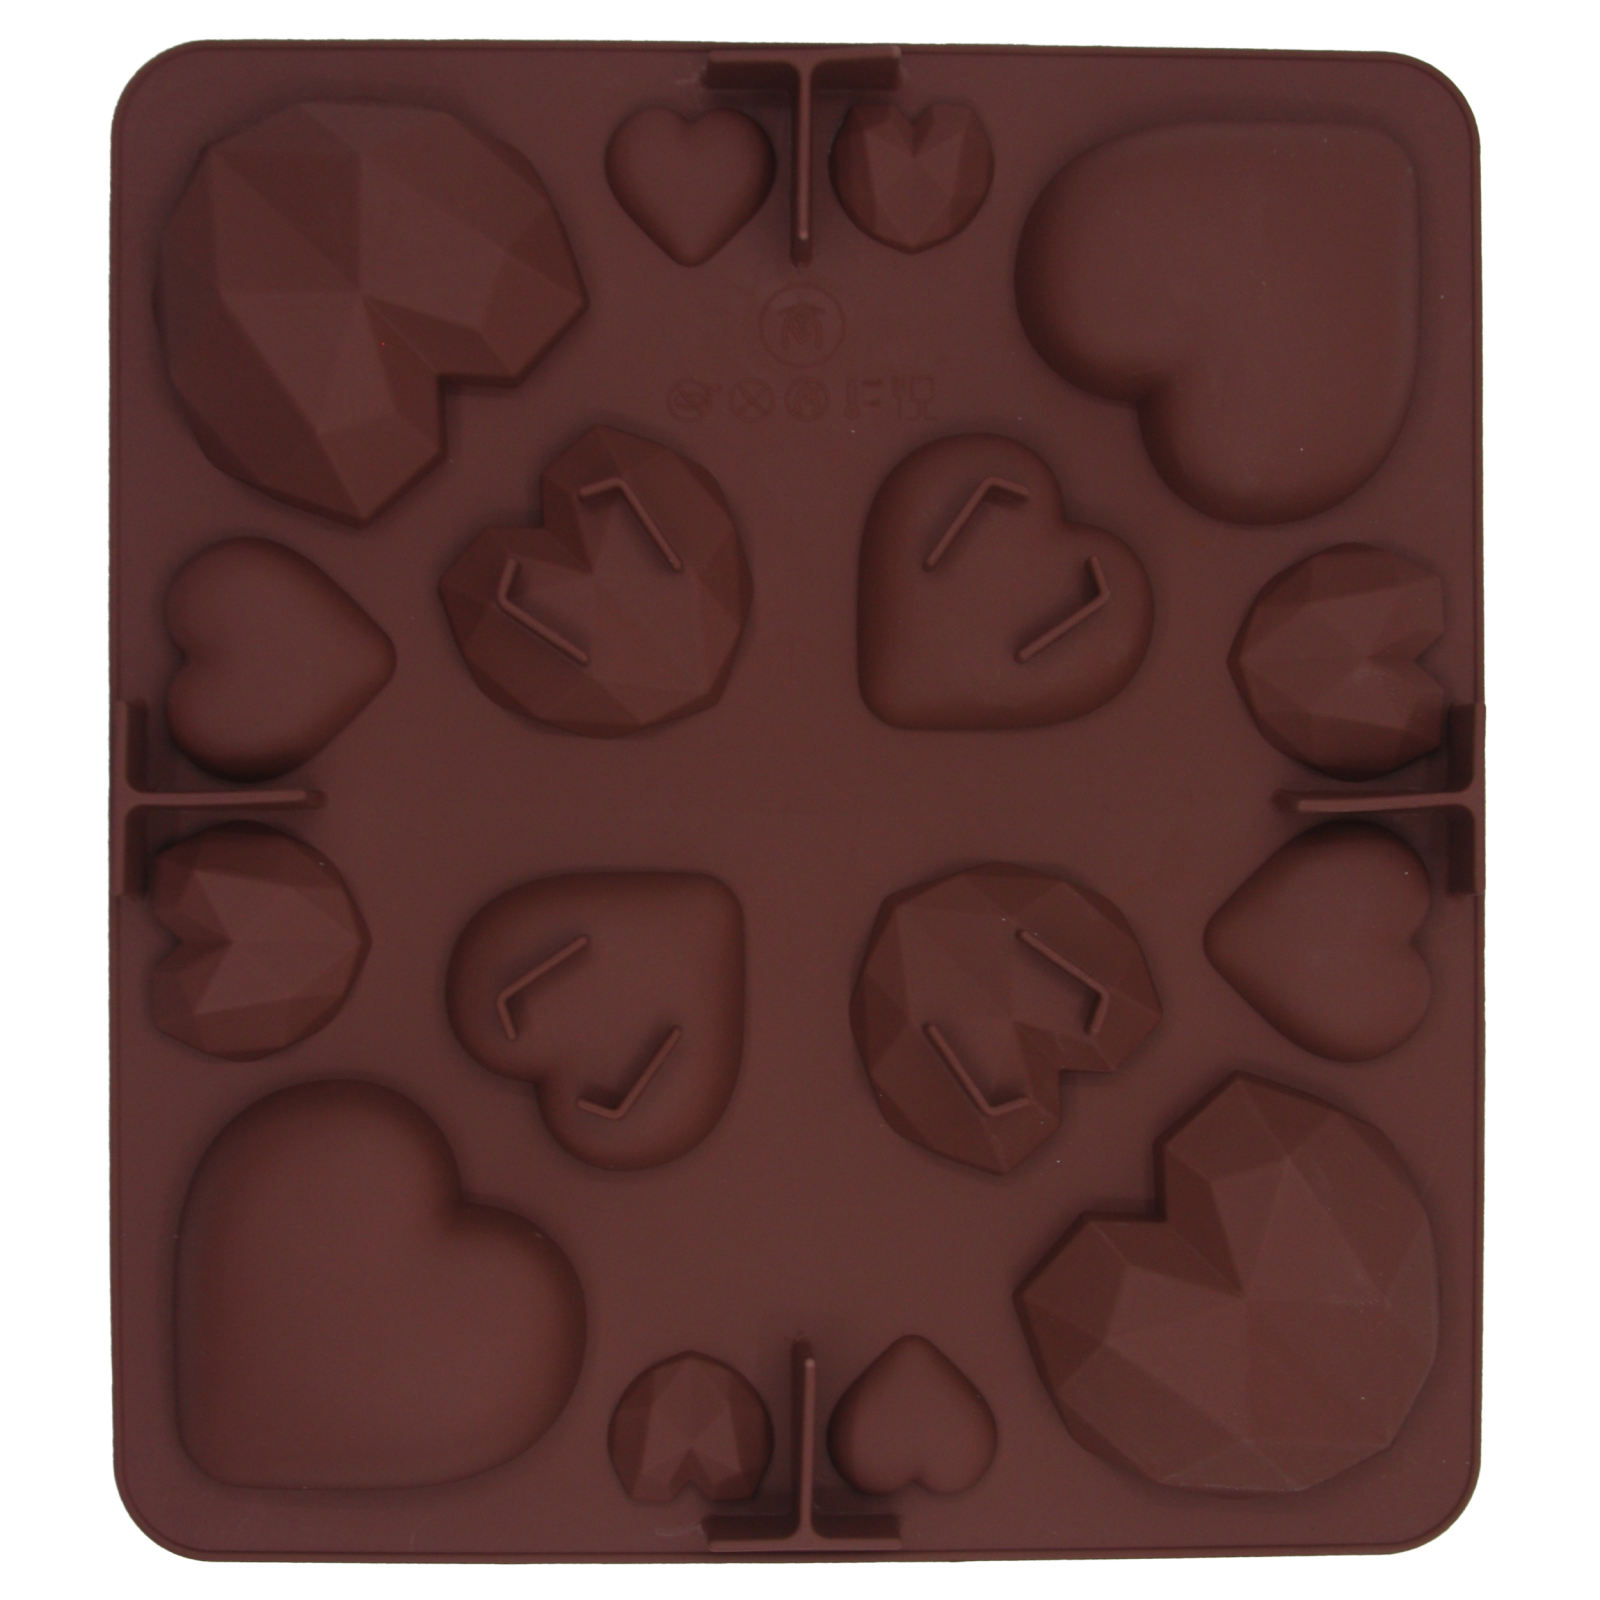 قالب شکلات مدل سیلیکونی میکس قلب کد 016